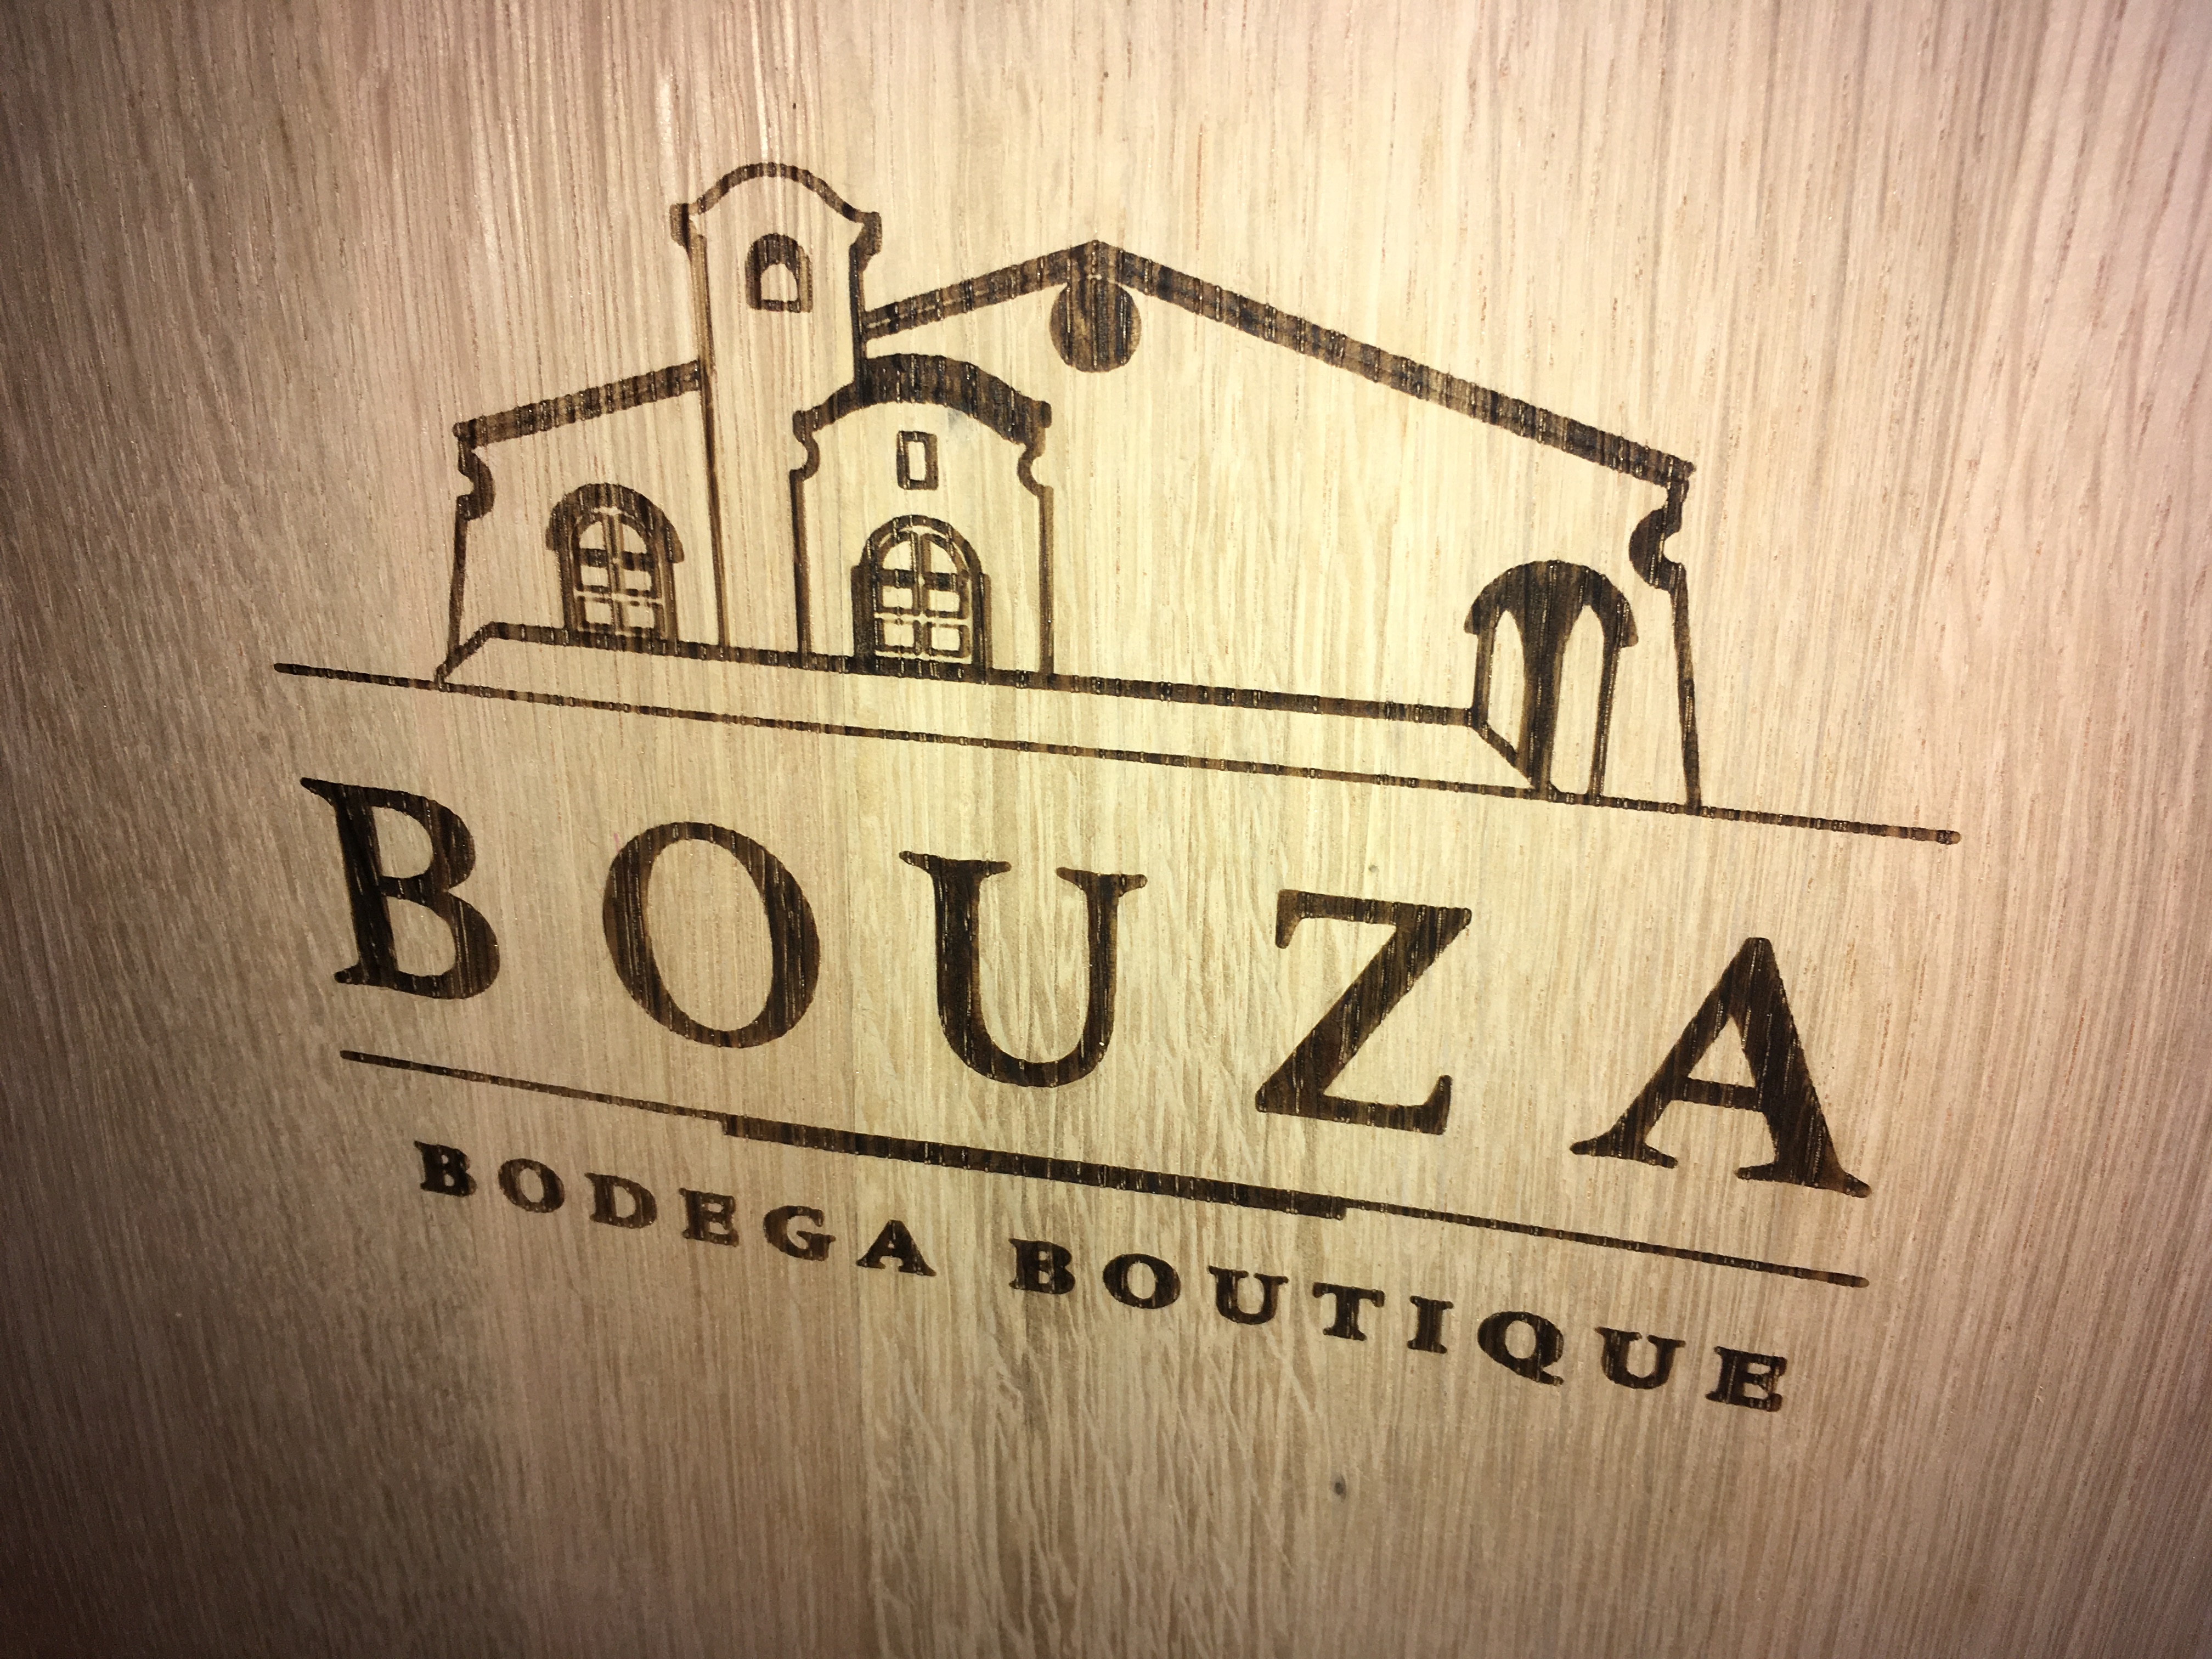 Bodega Bouza Visita com Degustação e Almoço